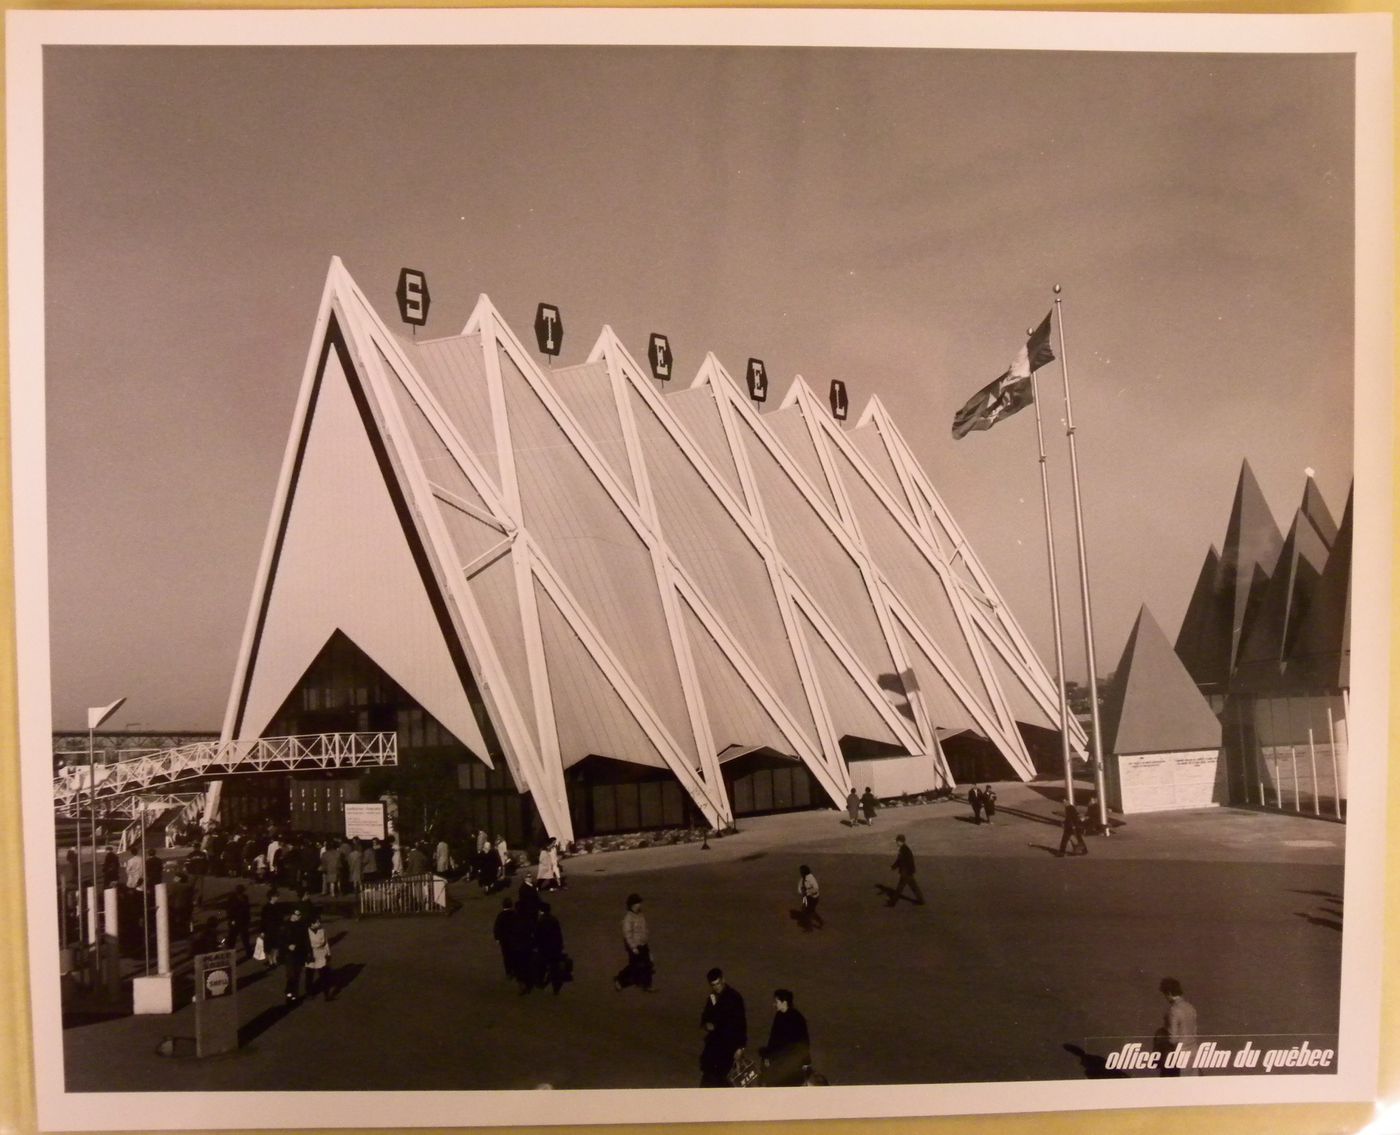 View of the Steel Pavilion, Expo 67, Montréal, Québec